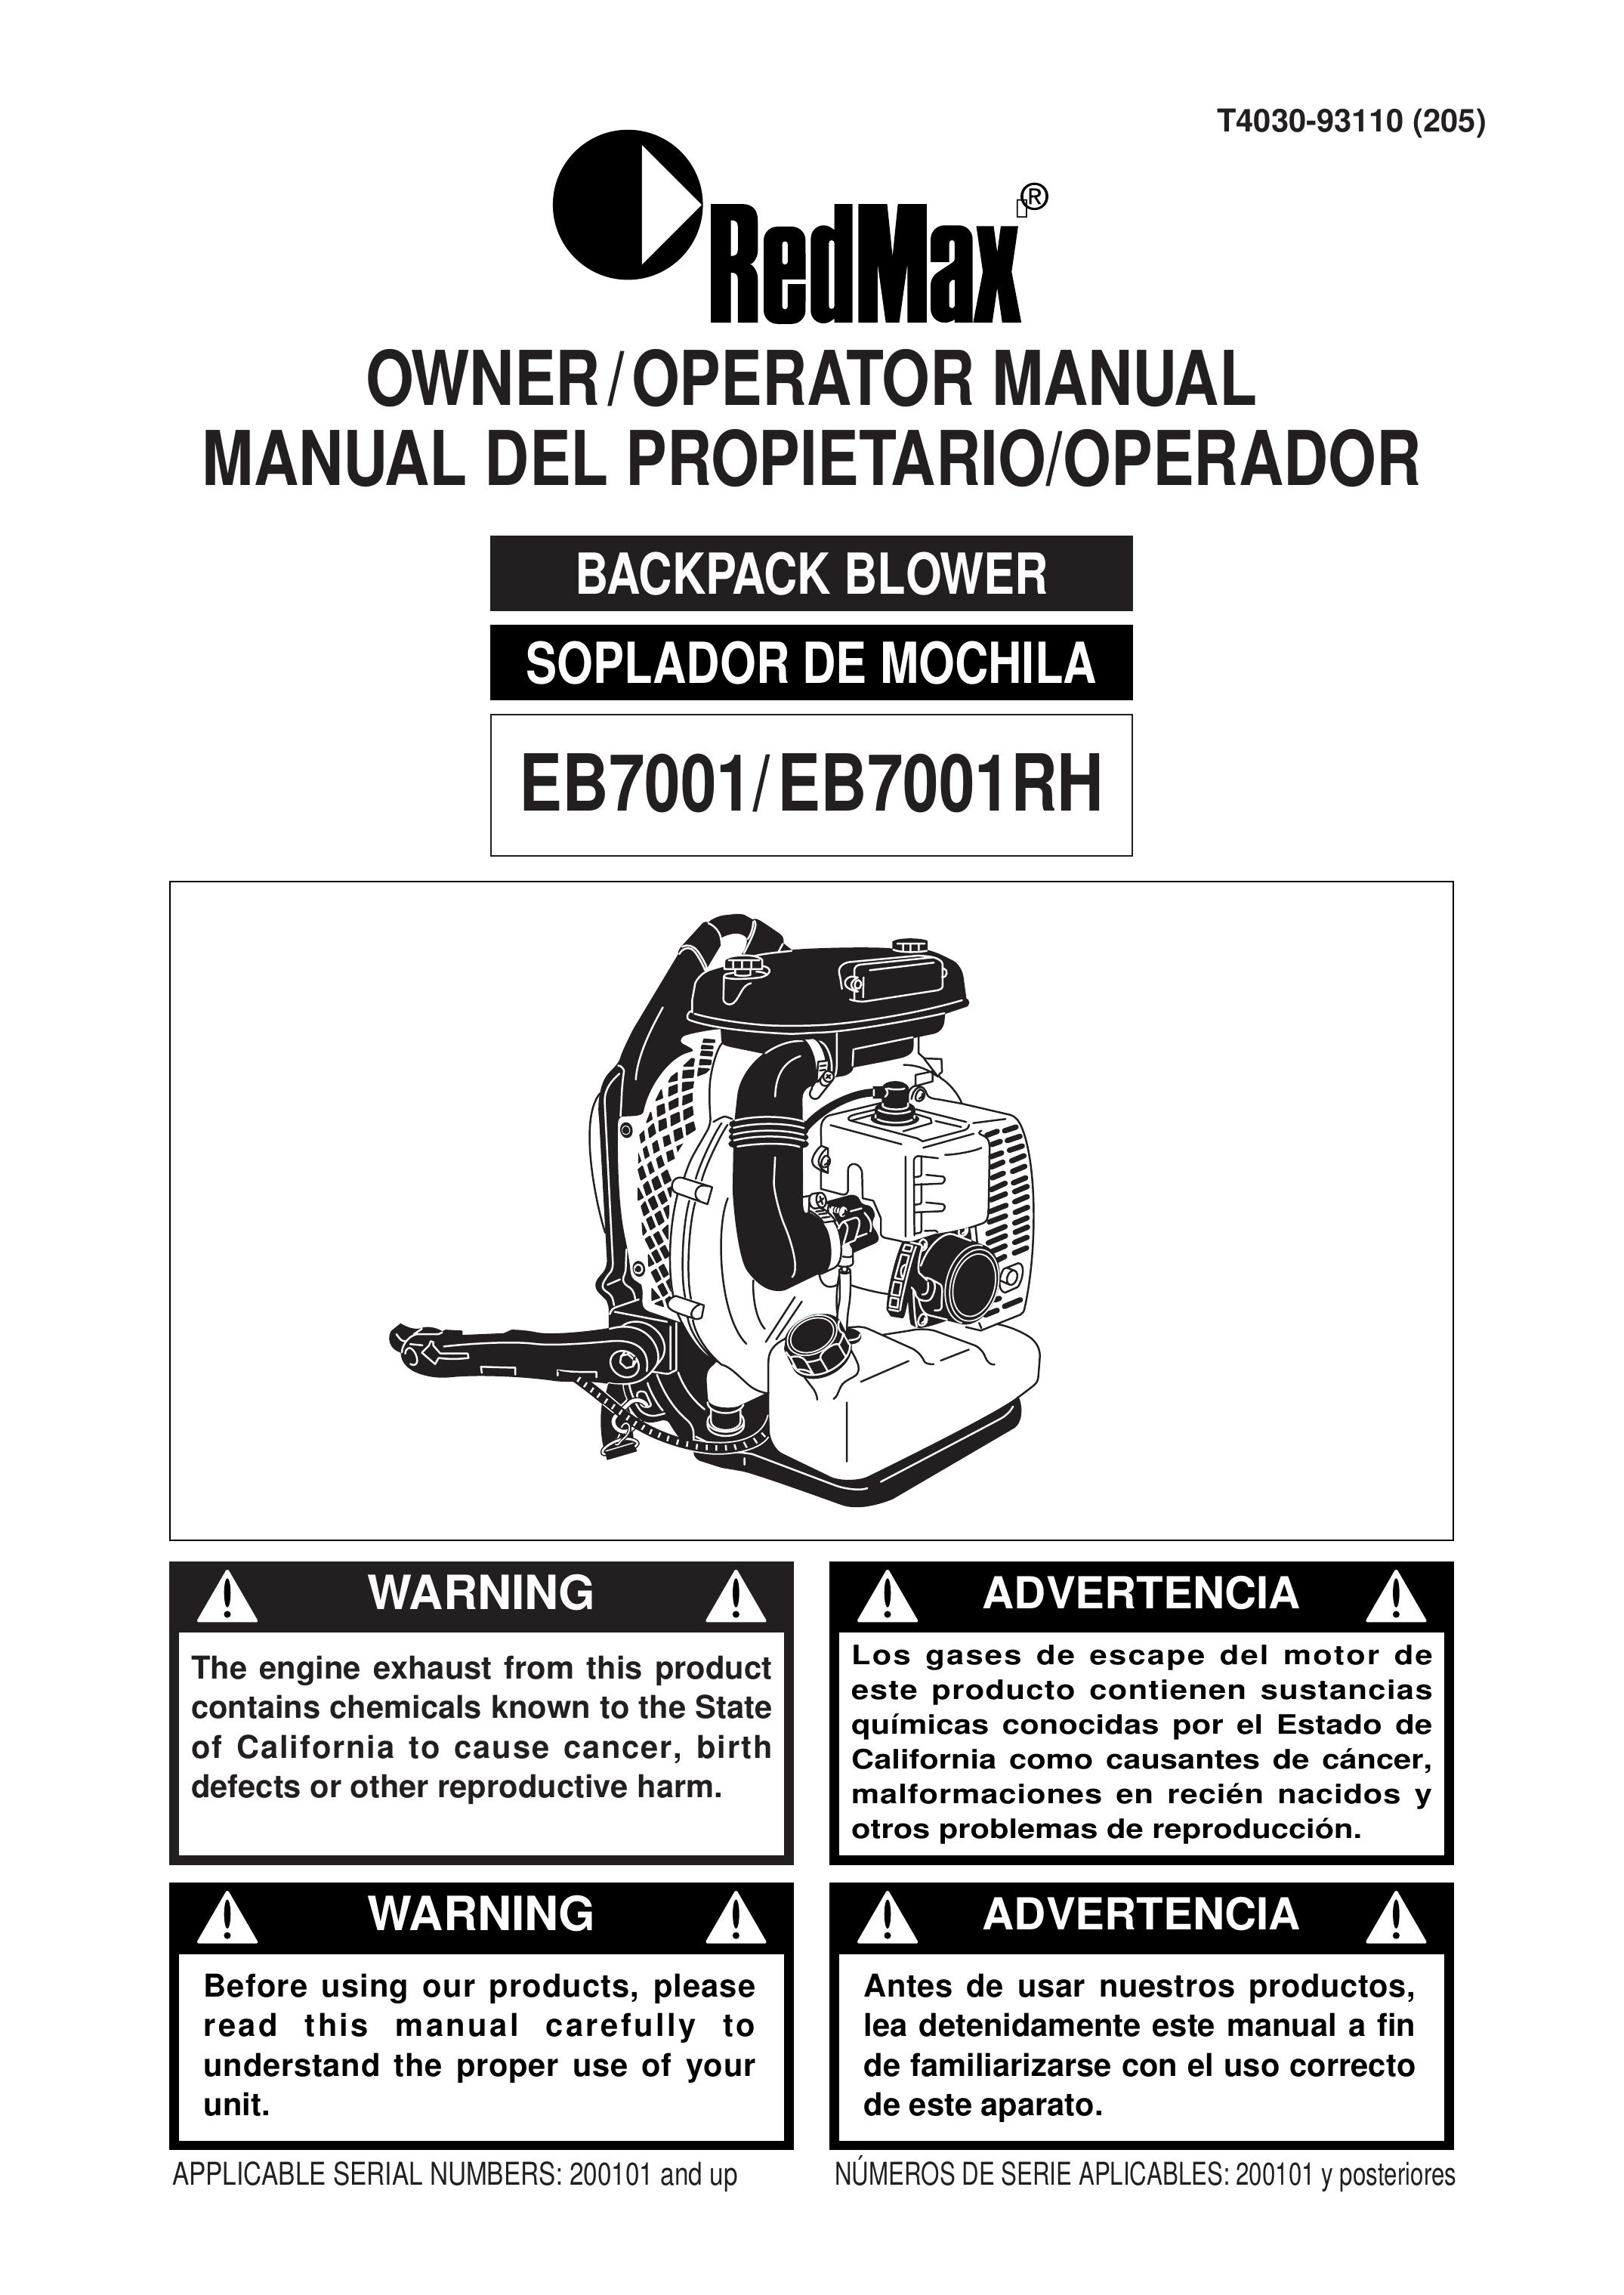 RedMax EB7001RH Blower User Manual